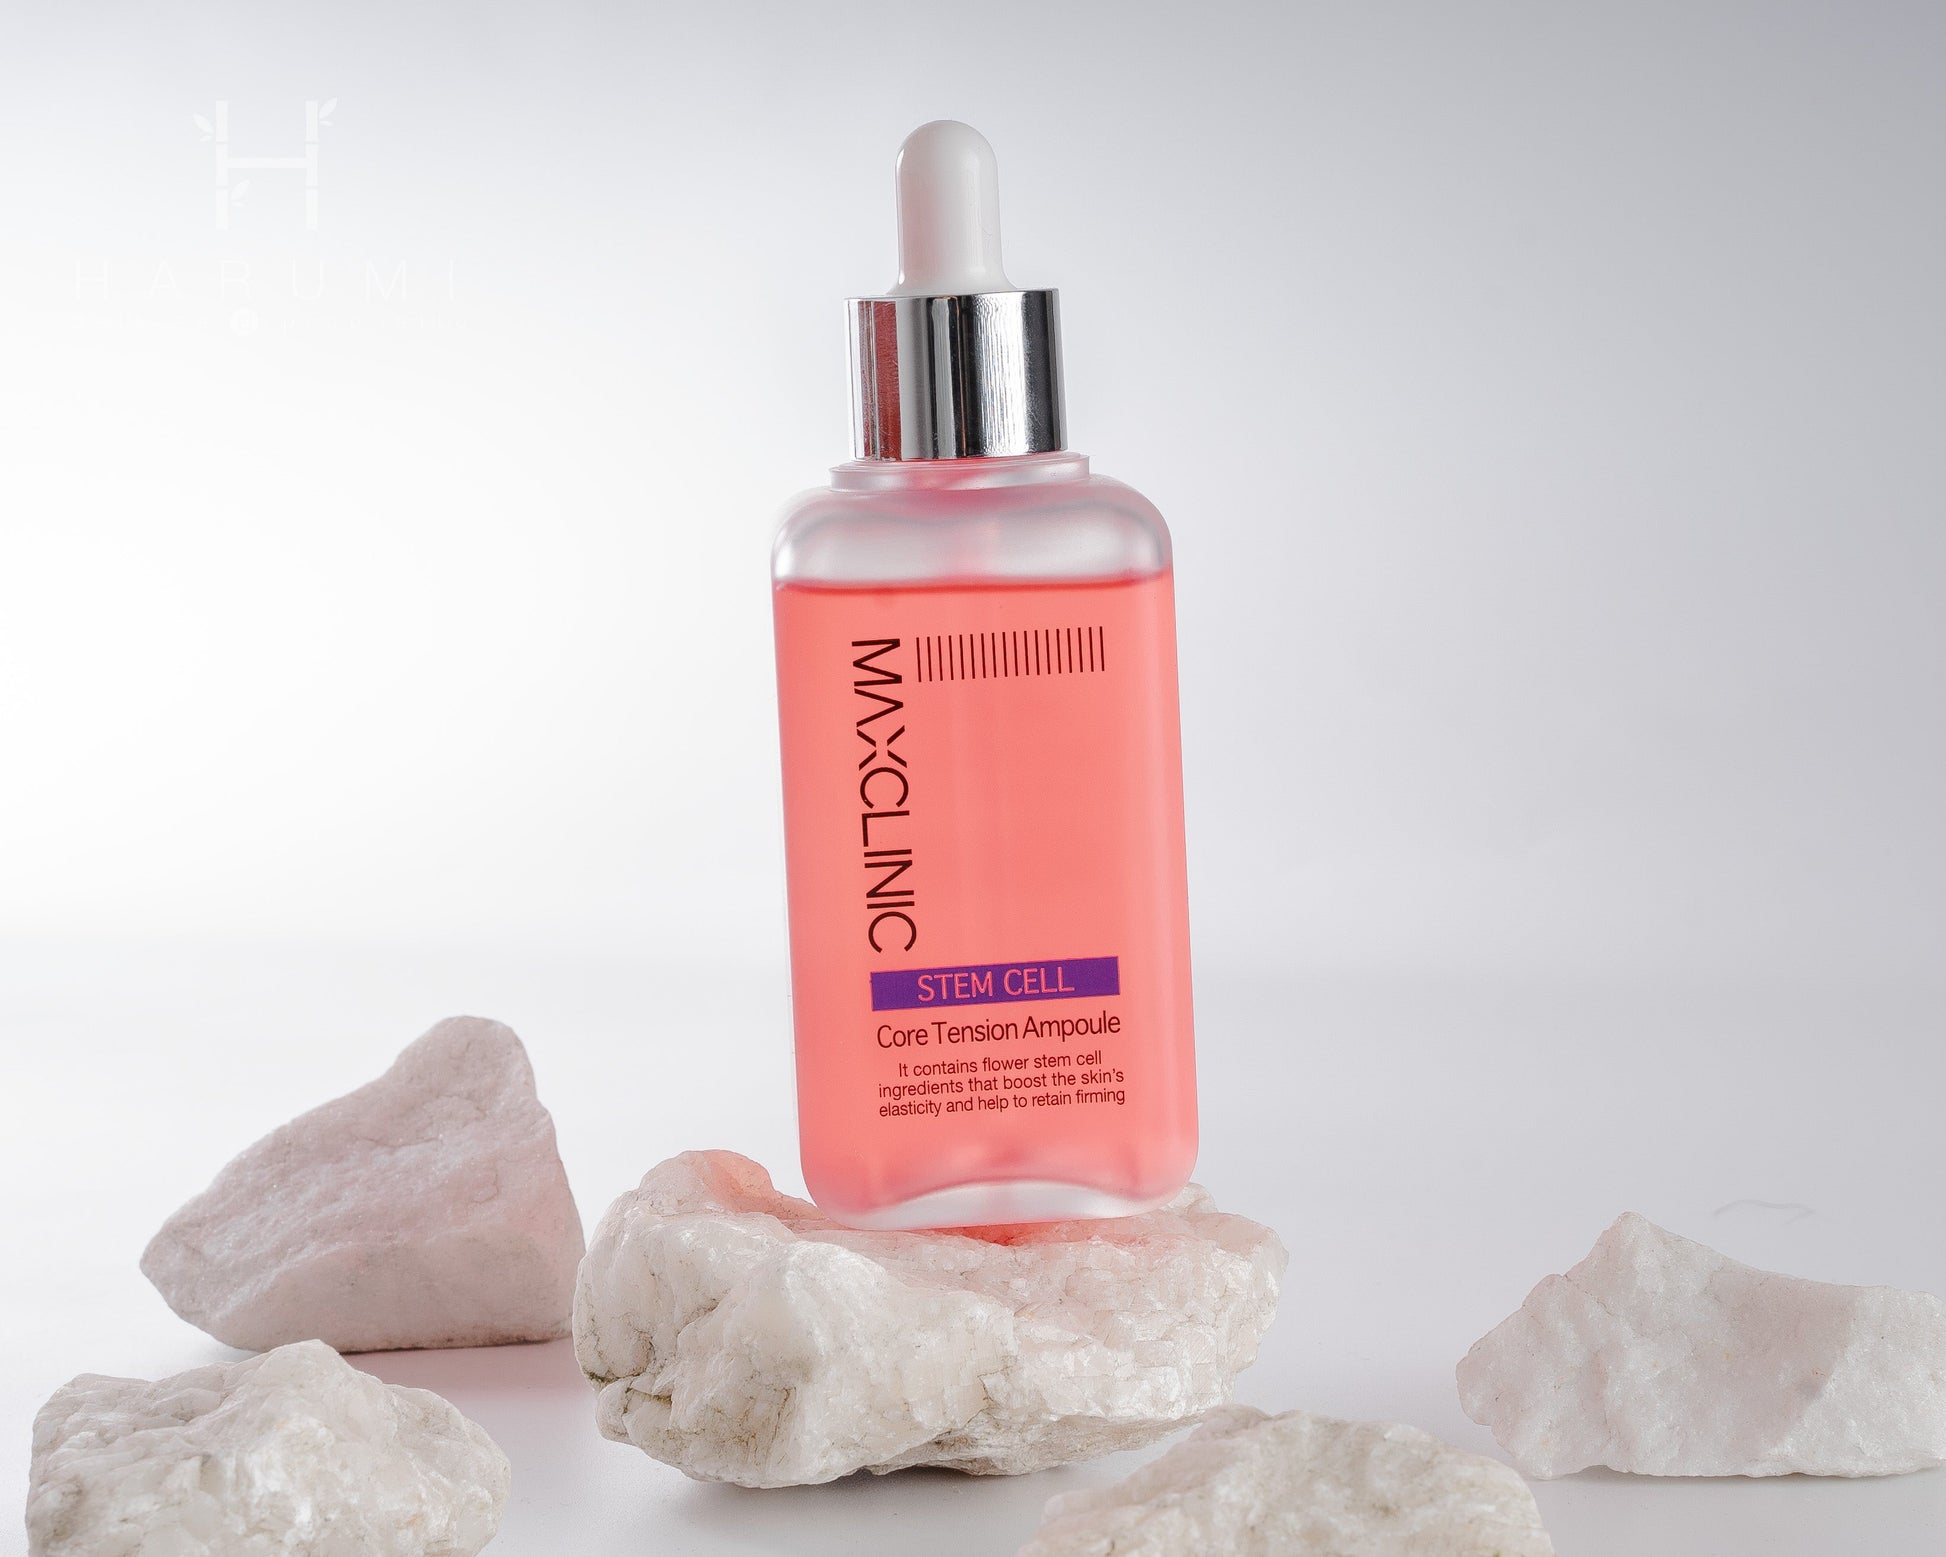 Maxclinic Stem Cell Core Tension Ampoule Skincare maquillaje productos de belleza coreanos en Colombia kbeauty